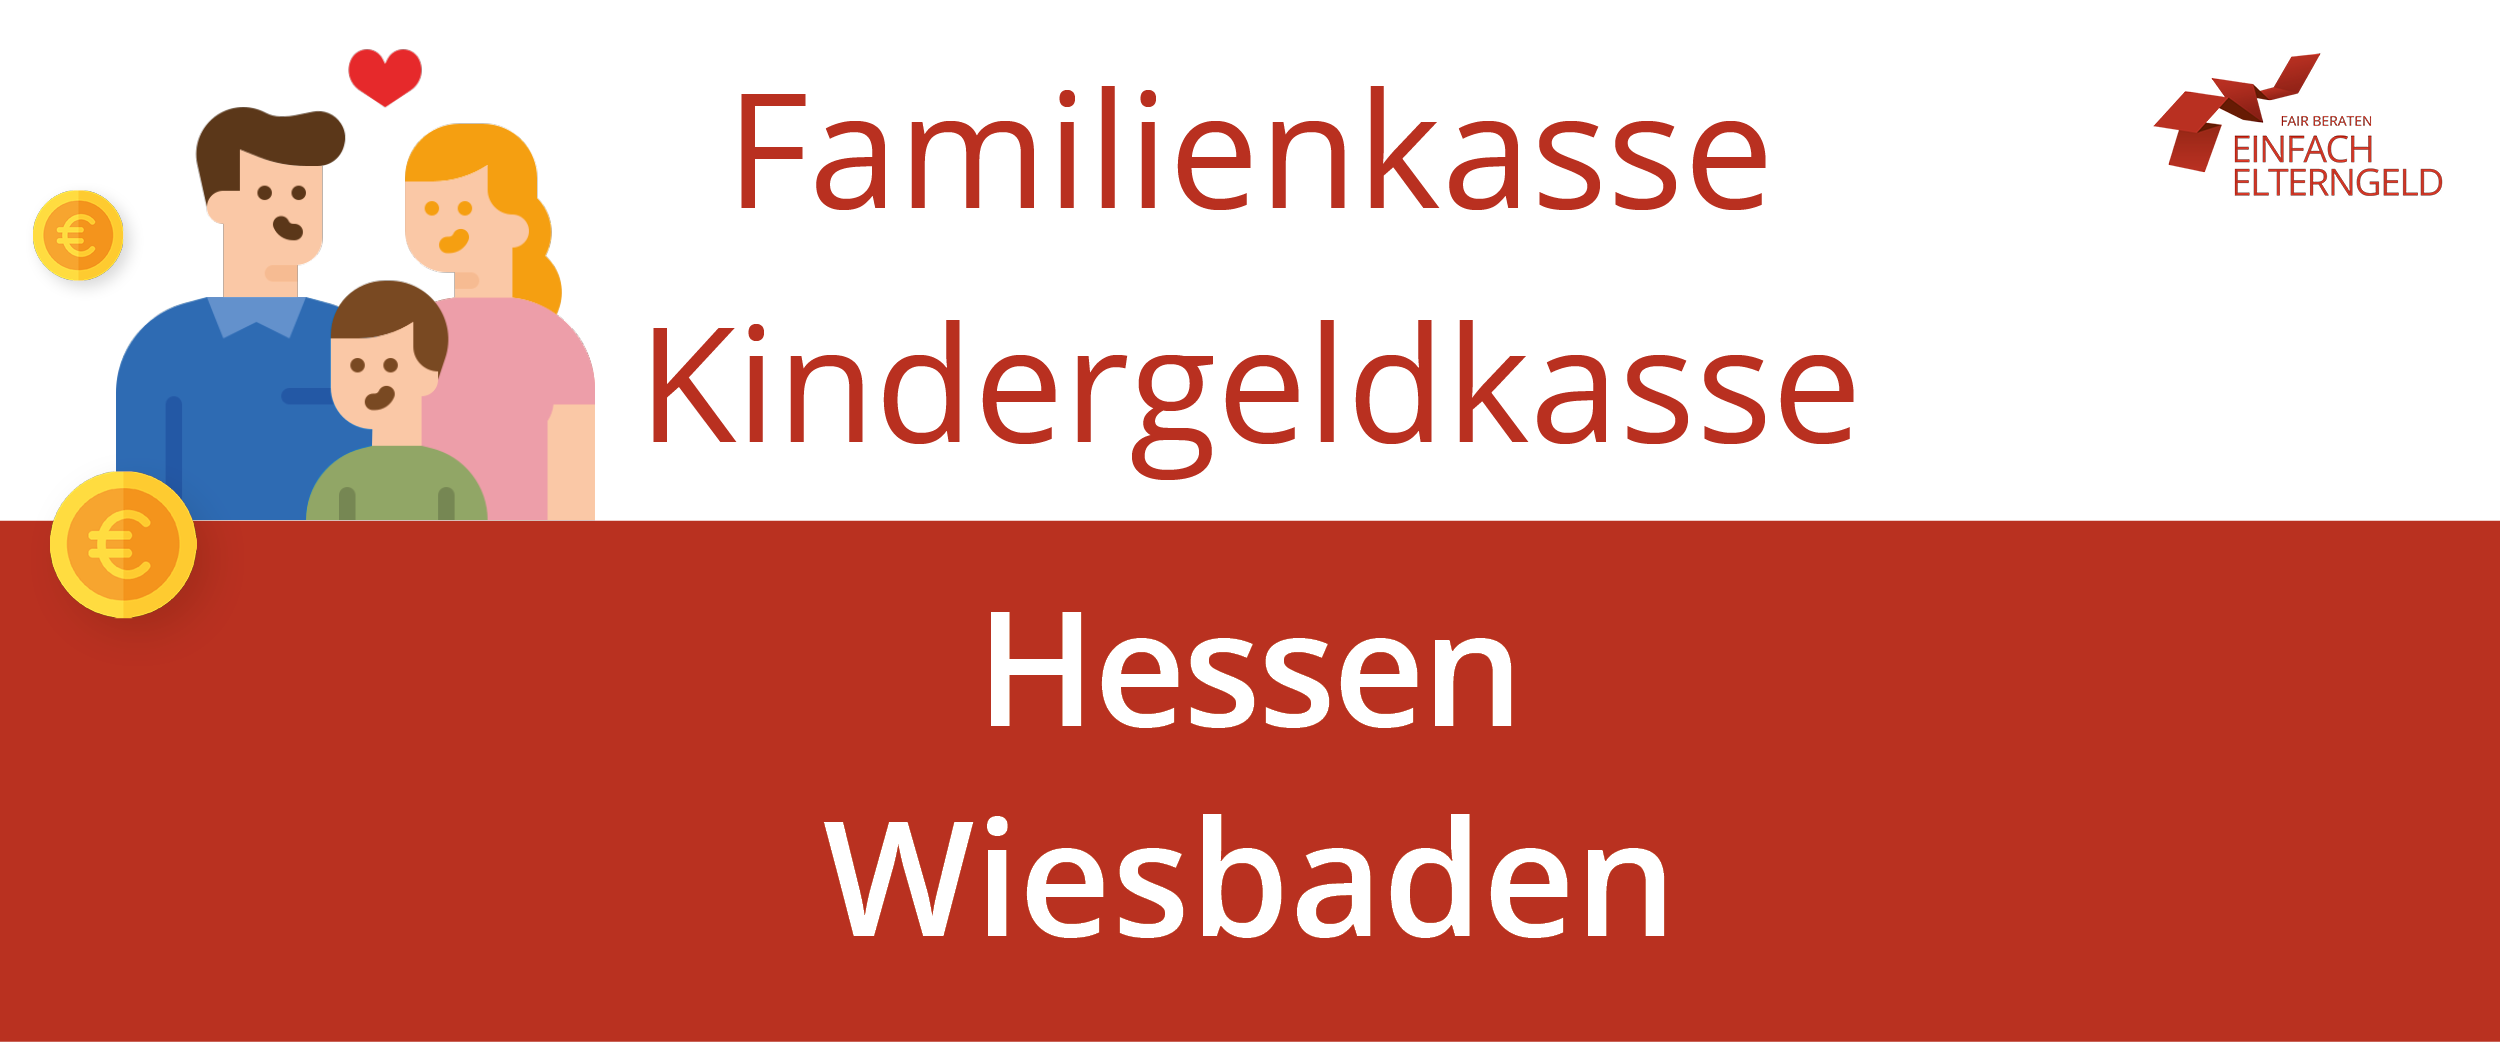 Wir stellen die Familienkasse Kindergeldkasse Hessen Wiesbaden vor.